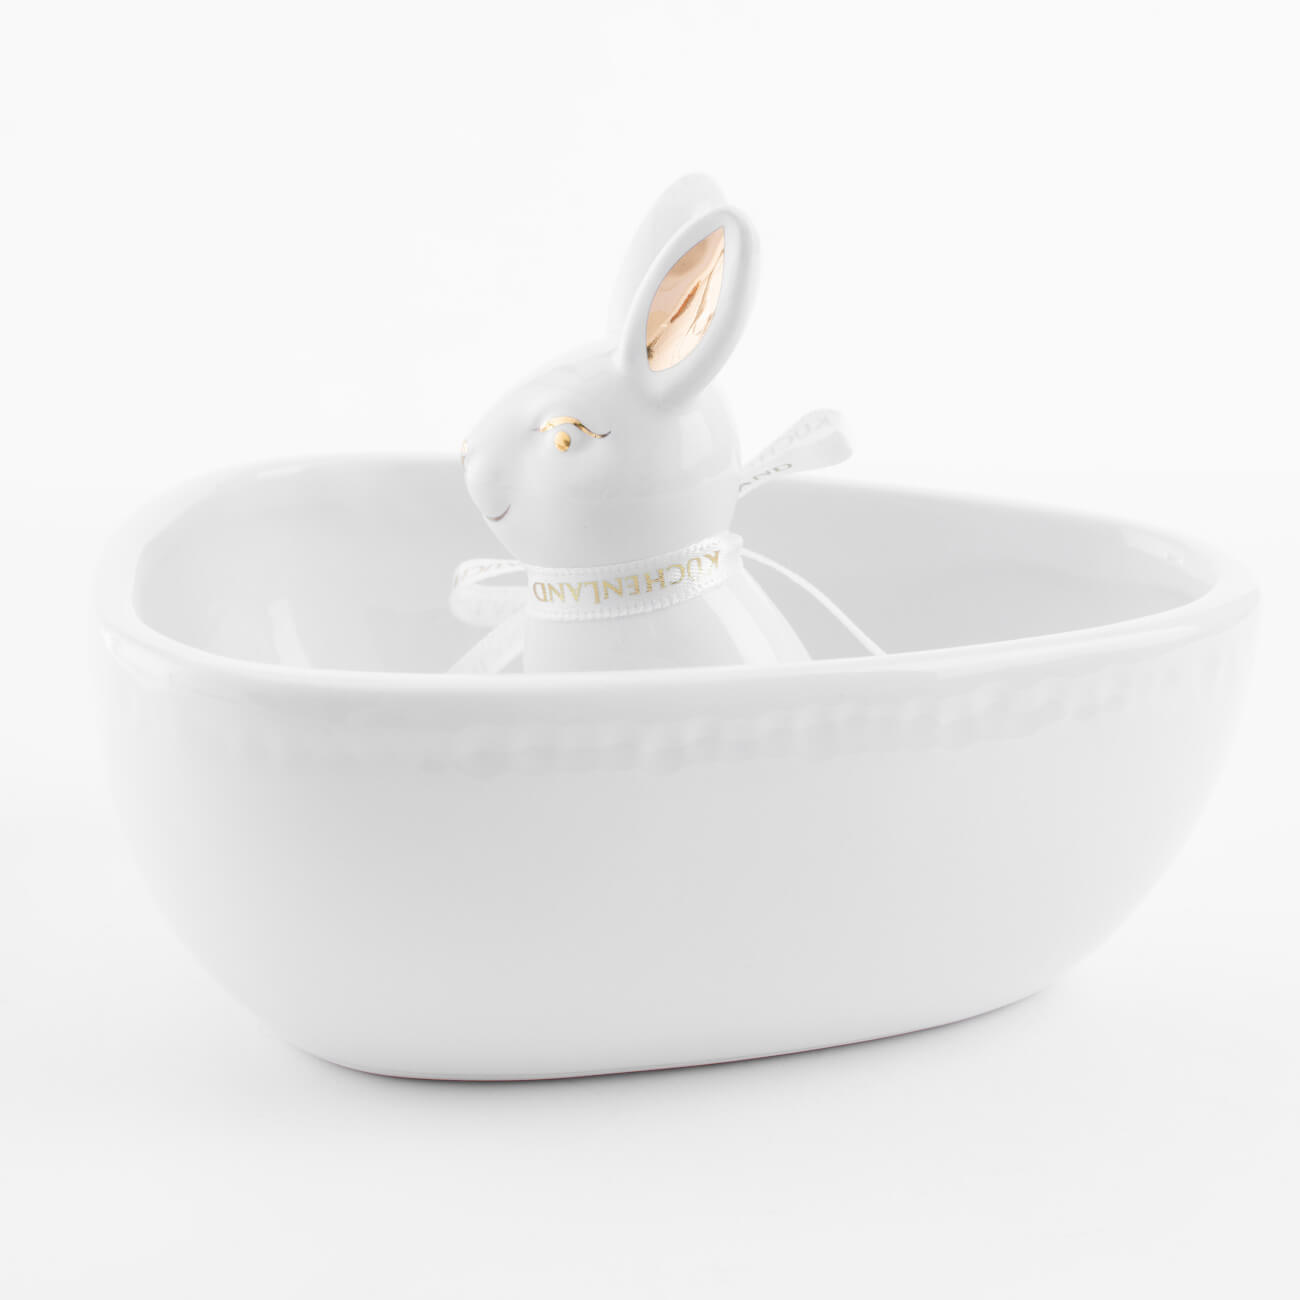 Конфетница, 13х13 см, керамика, бело-золотистая, Кролик внутри, Easter gold конфетница 14×14 см хохлома